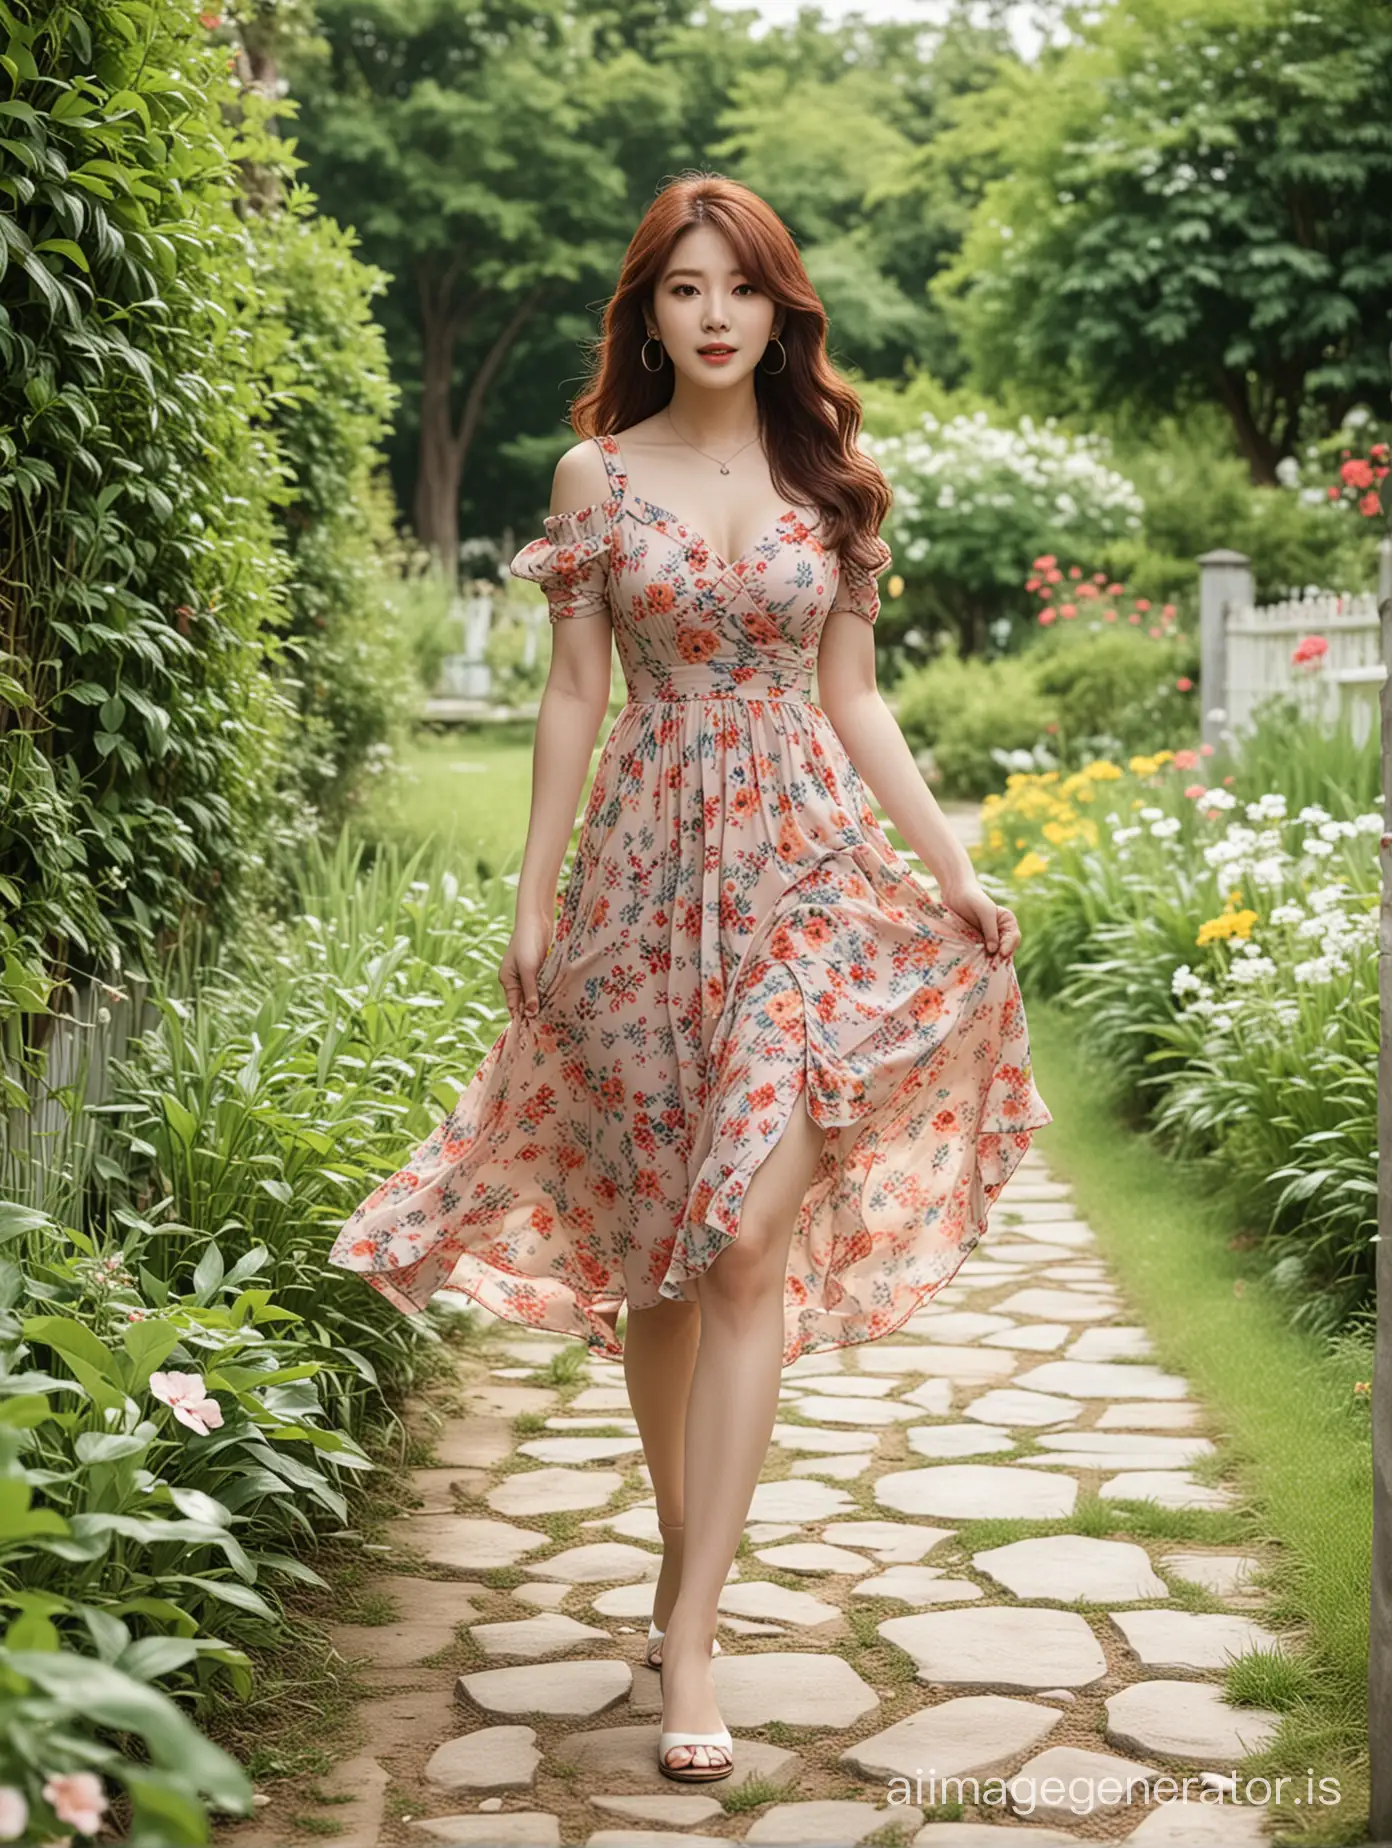 Beautiful Jung Hyoseong in stylish pop dress walking through a nice garden, 